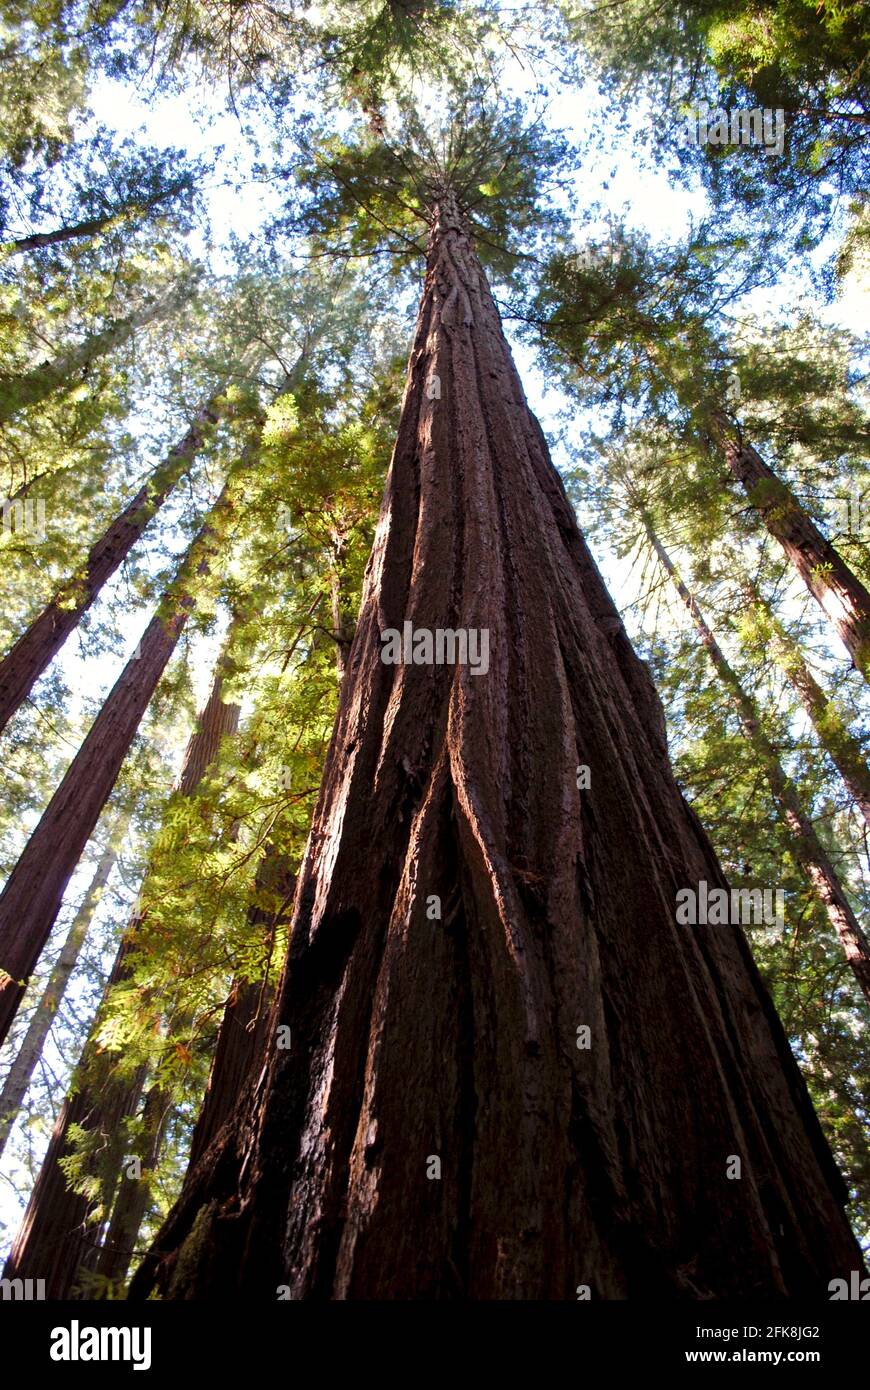 Le parc régional Humboldt Redwoods est un parc national de Californie, aux États-Unis, contenant la forêt Rockefeller, ancienne forêt de séquoias côtiers. Banque D'Images